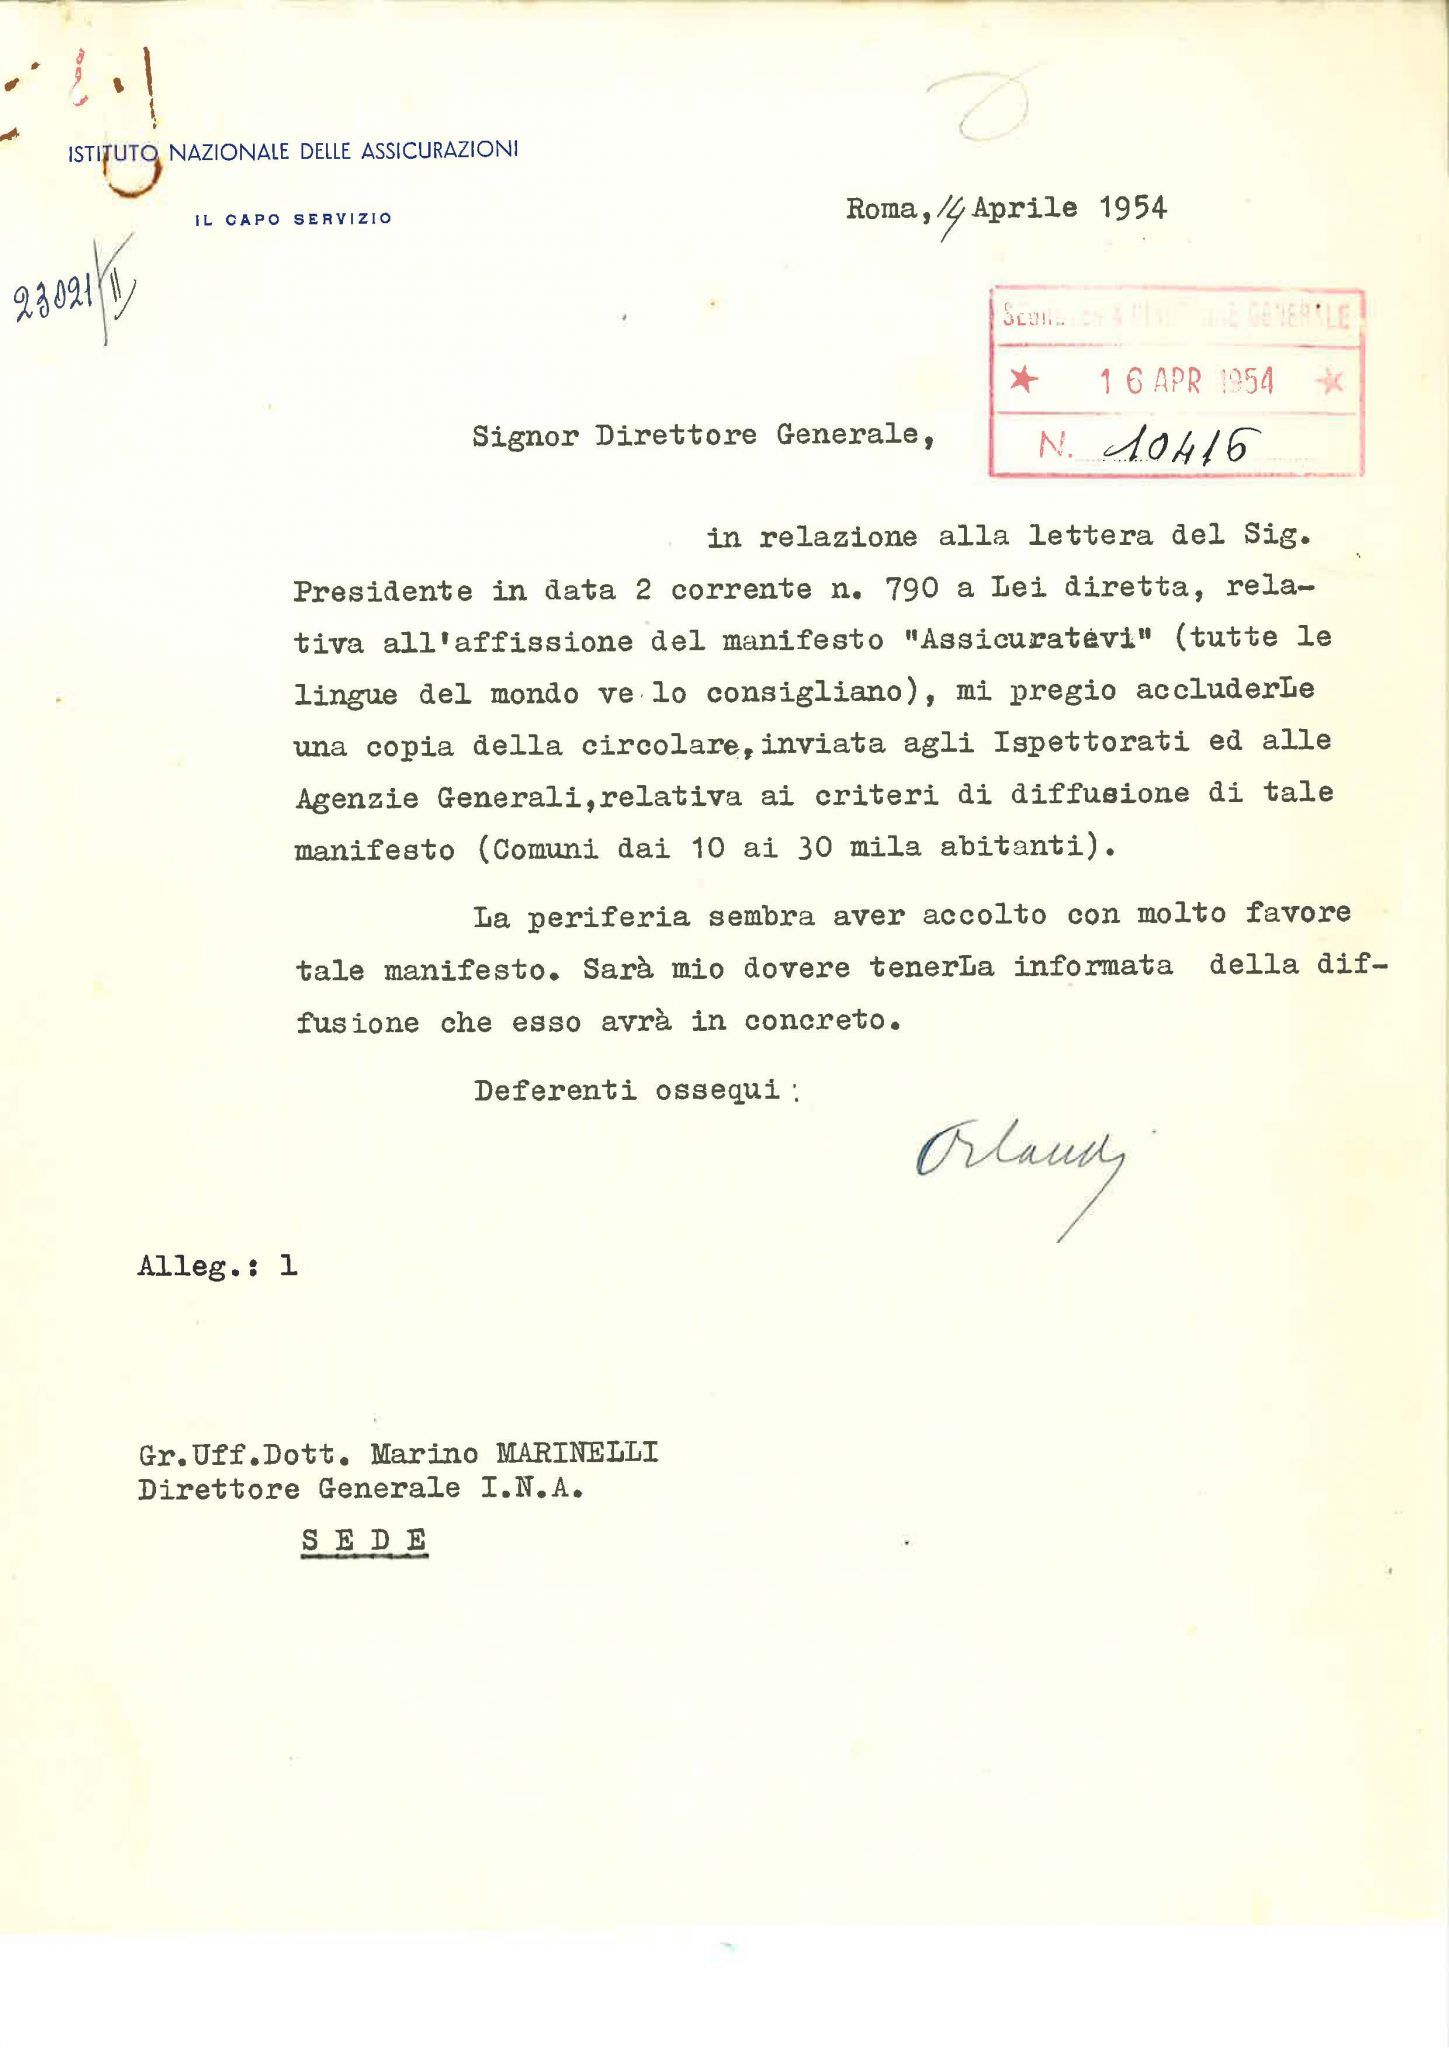 Corrispondenza del direttore generale dell’INA sulla diffusione del manifesto “Assicuratevi” (Roma, 6-14 aprile 1954)